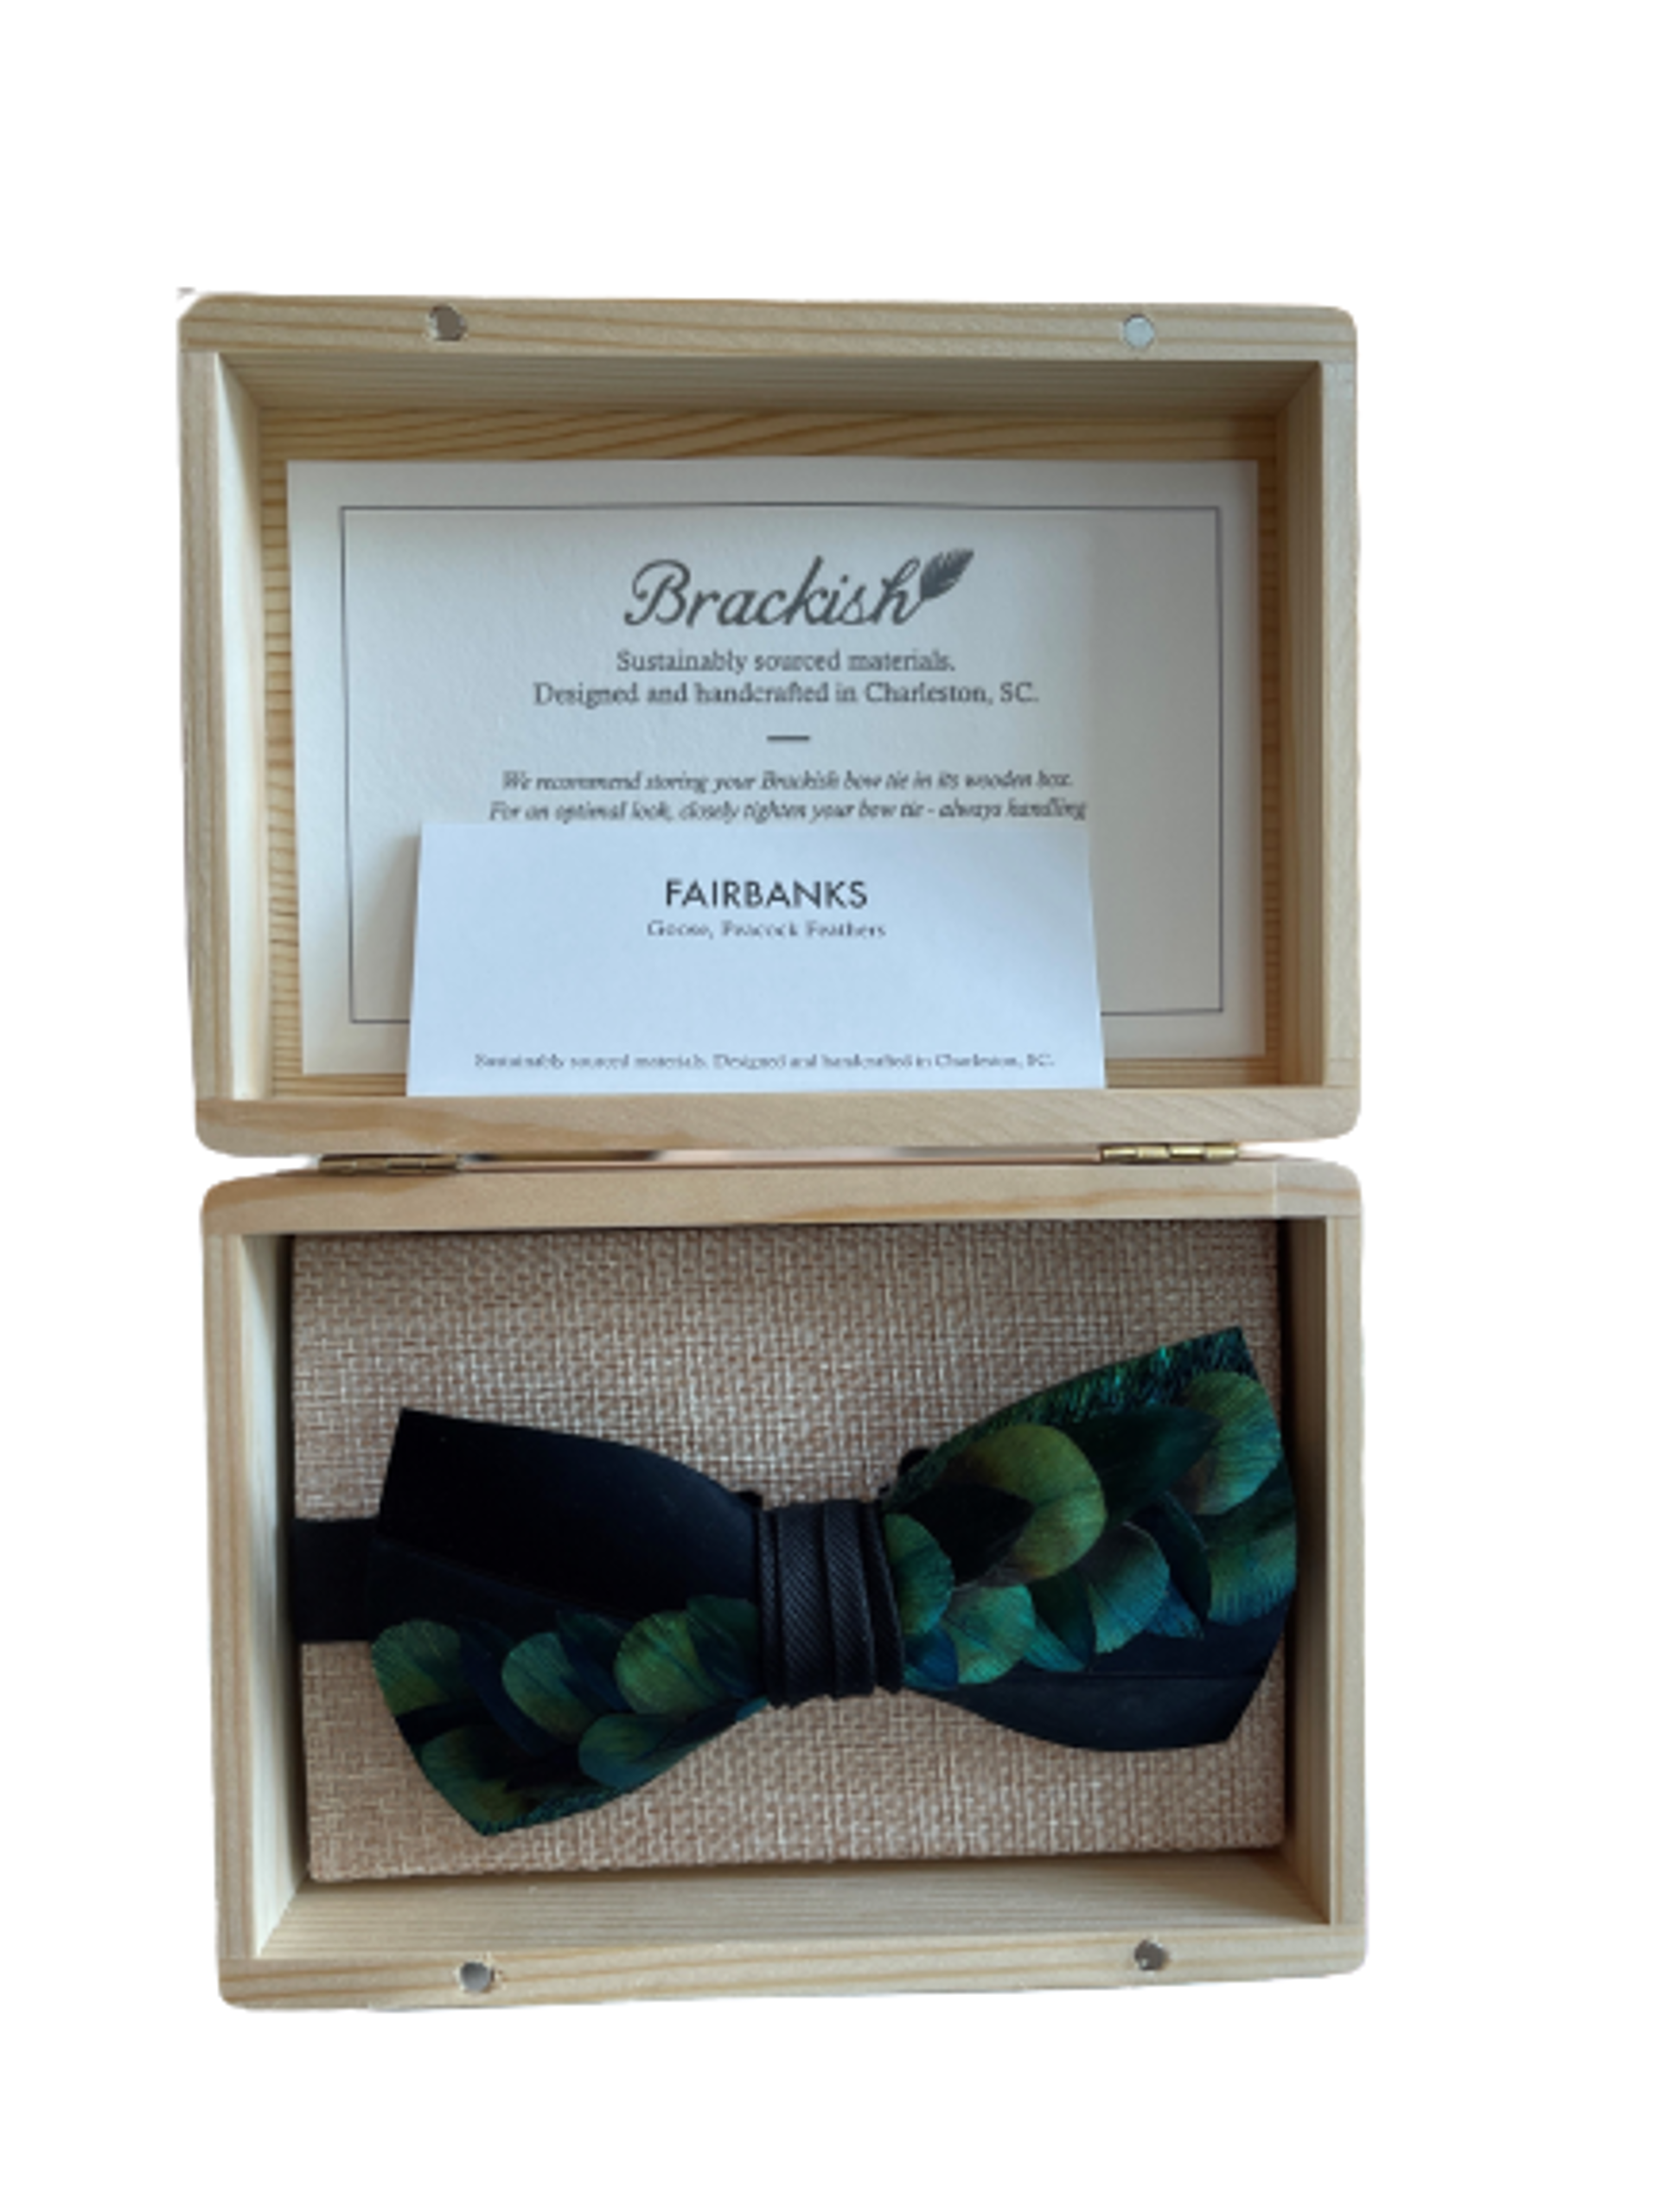 Fairbanks Bow Tie by Brackish